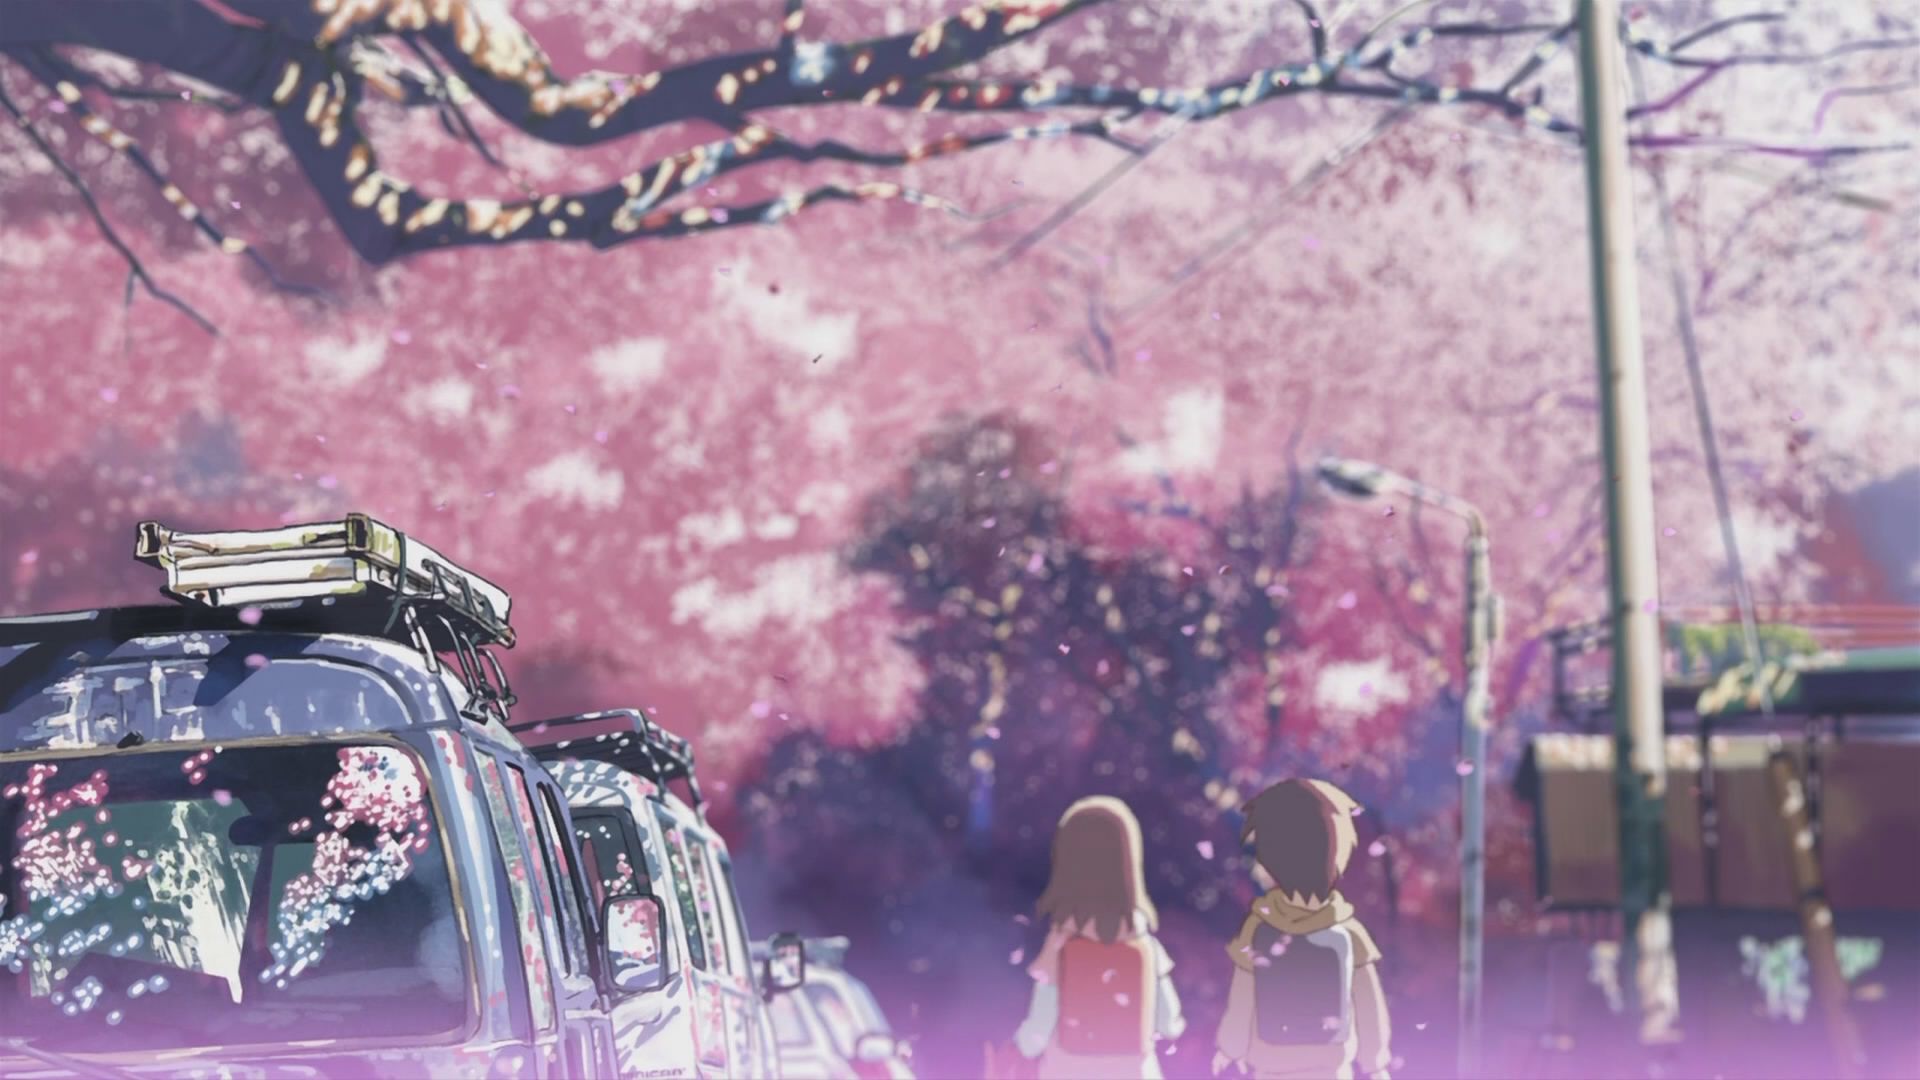 Background Art - Scenery - Zerochan Anime Image Board